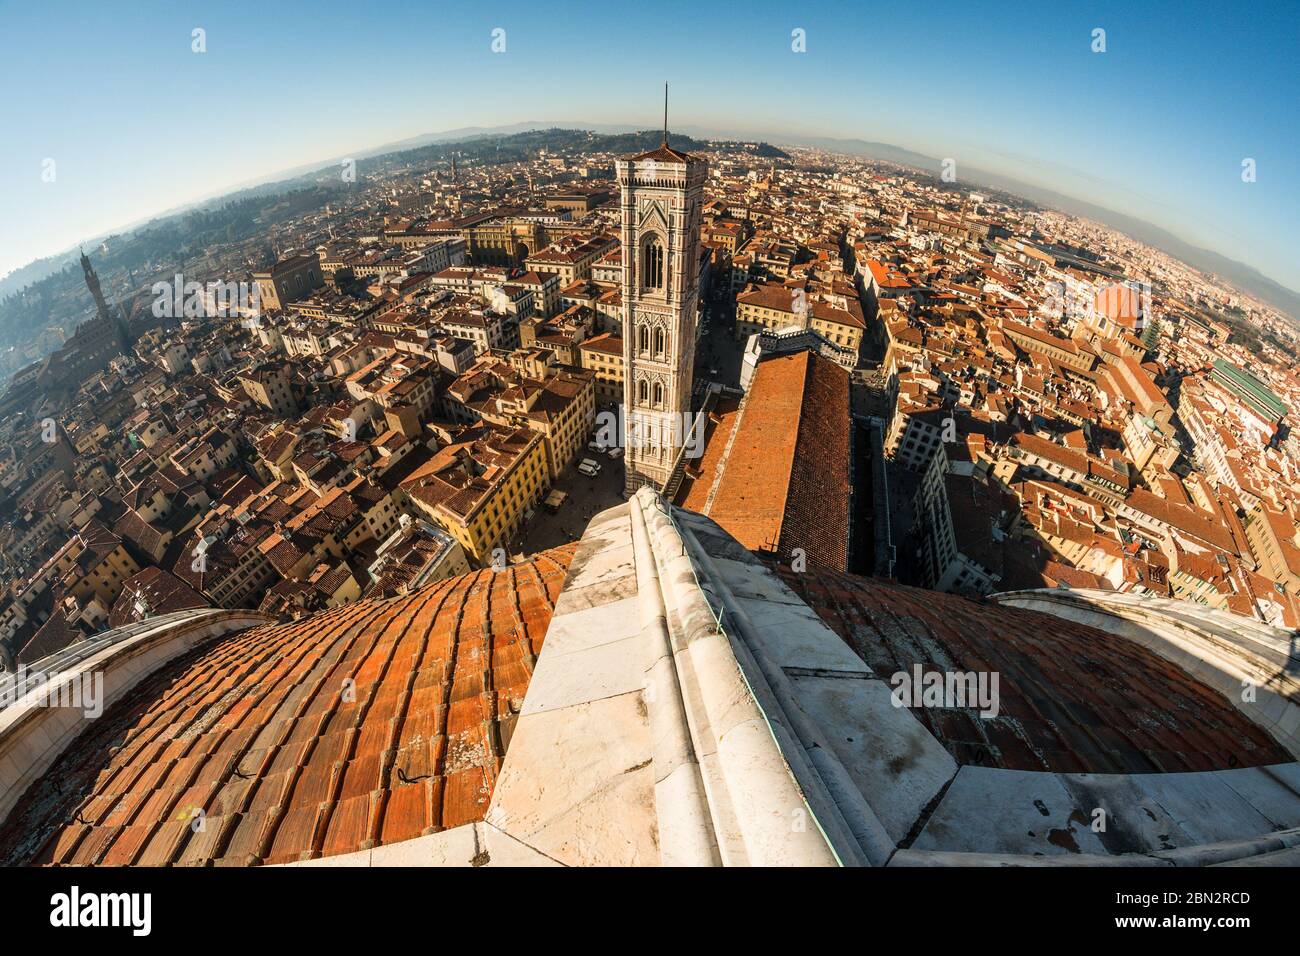 Ein Blick aus der Fischperspektive auf Florenz von der Spitze der brunelleschi-Kuppel, den Dächern der Altstadt und dem Giotto-Glockenturm im Hintergrund Stockfoto